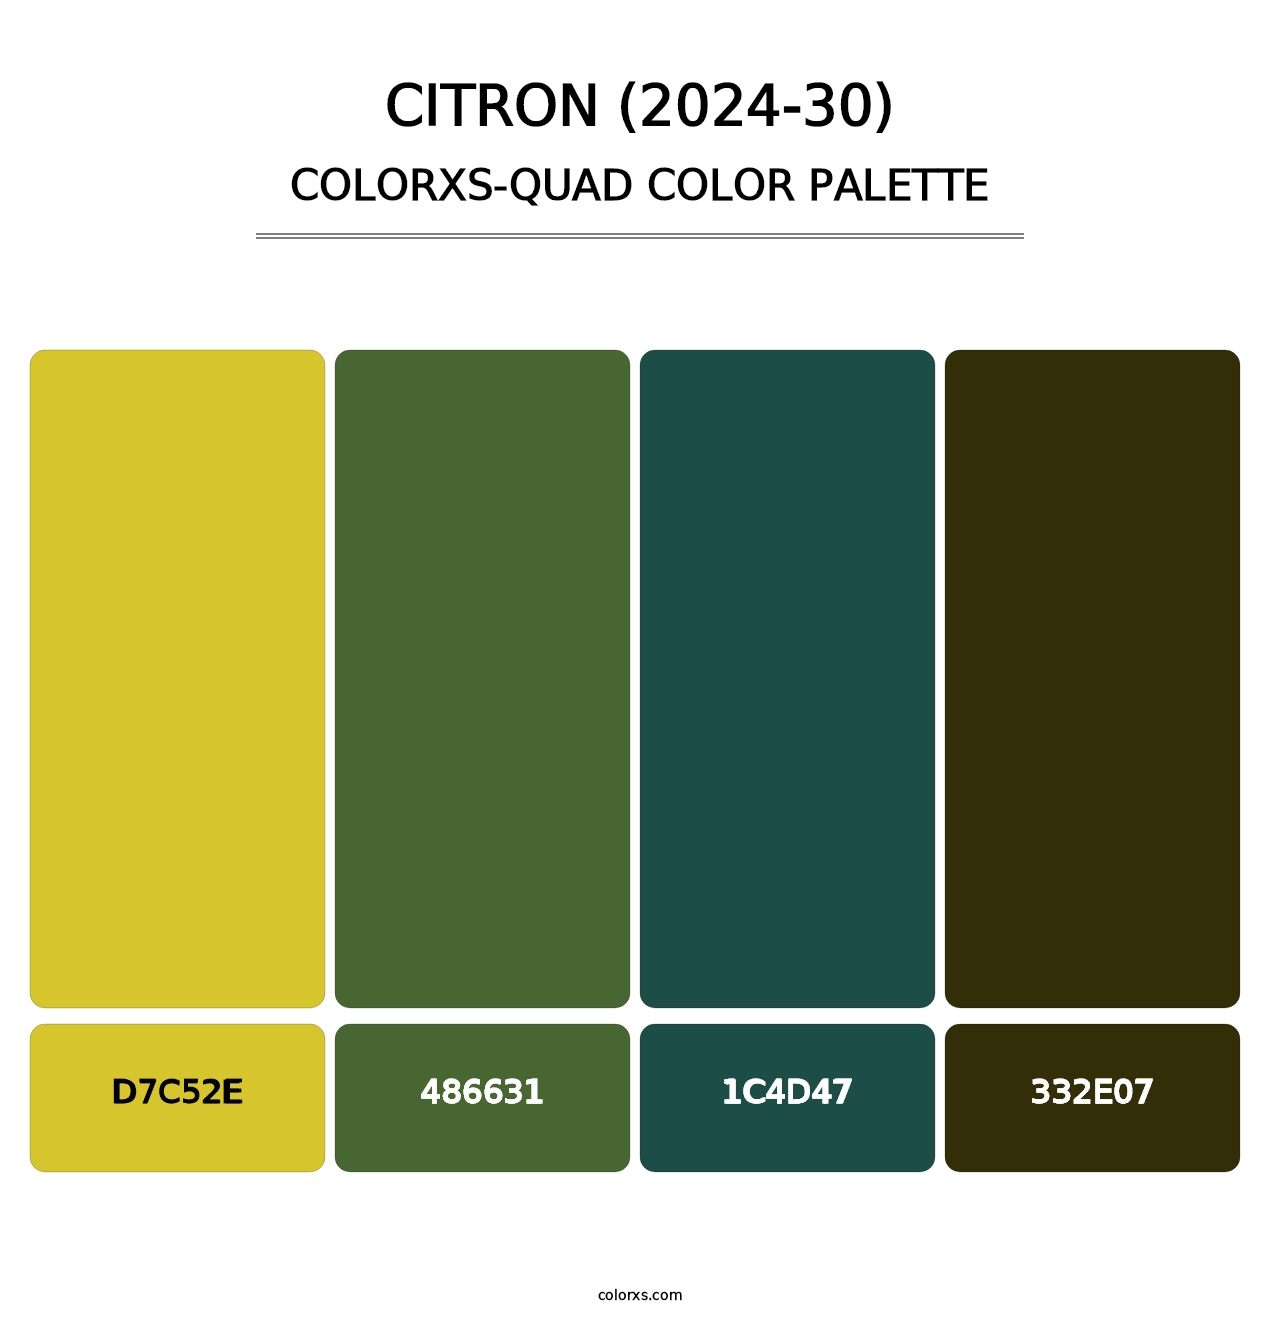 Citron (2024-30) - Colorxs Quad Palette